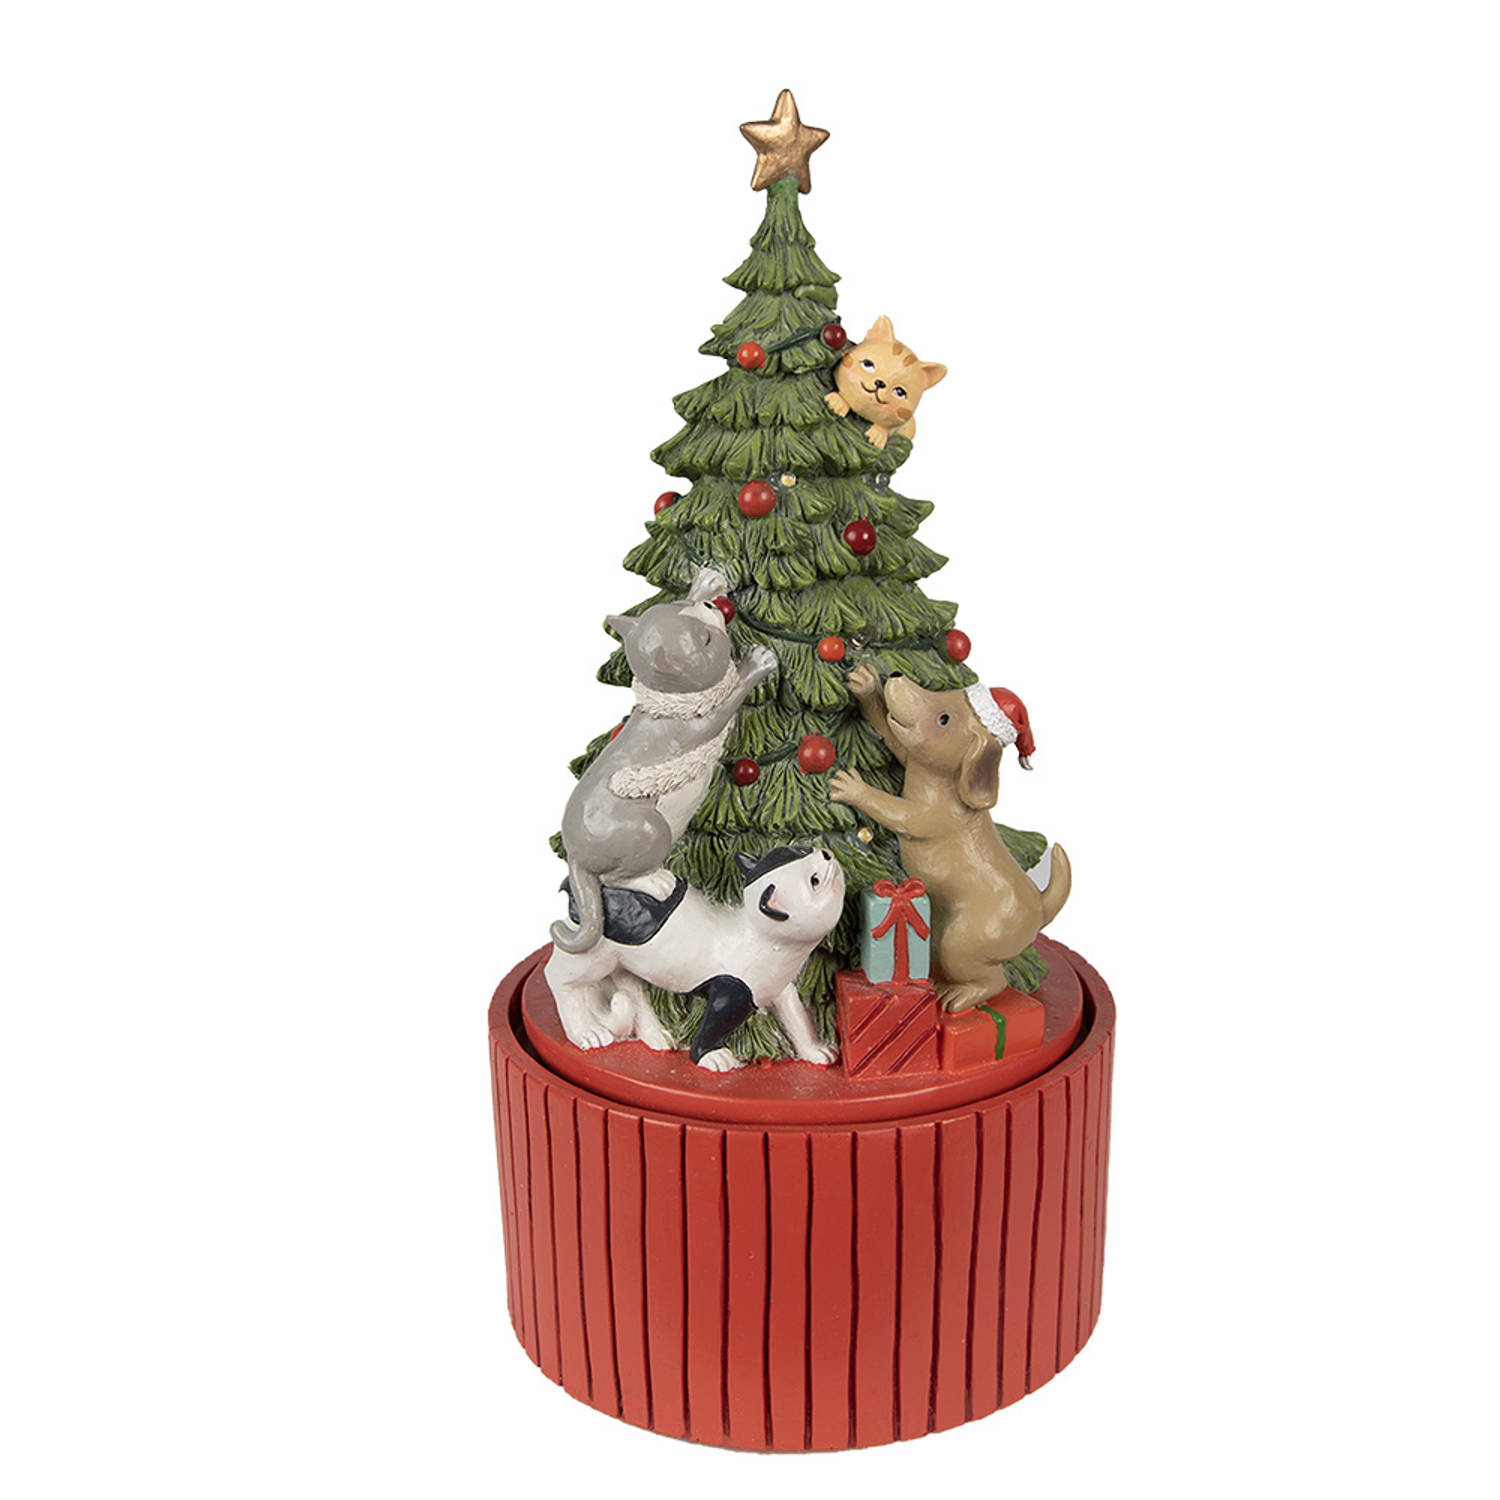 HAES DECO Muziekdoos Kerstboom met verlichting Ø 14x27 cm Groen Kerst Figuur, Kerstdecoratie